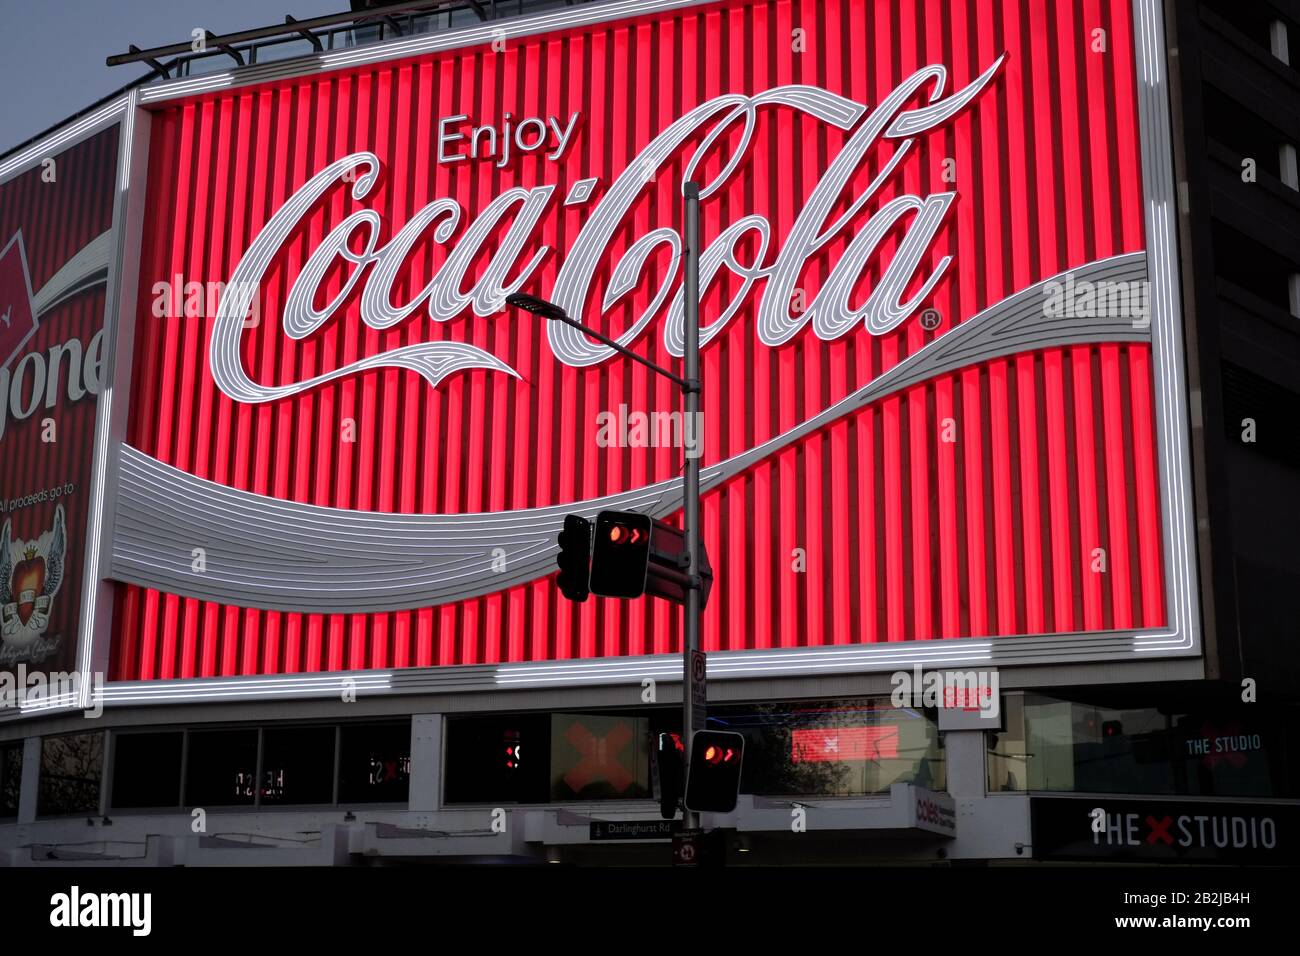 Le nouveau panneau et logotype Kings Cross Coke en 2016 s'est éclairé et éclairé au crépuscule dans une lumière vive le soir, une scène de rue, un panneau d'affichage uniquement. Banque D'Images